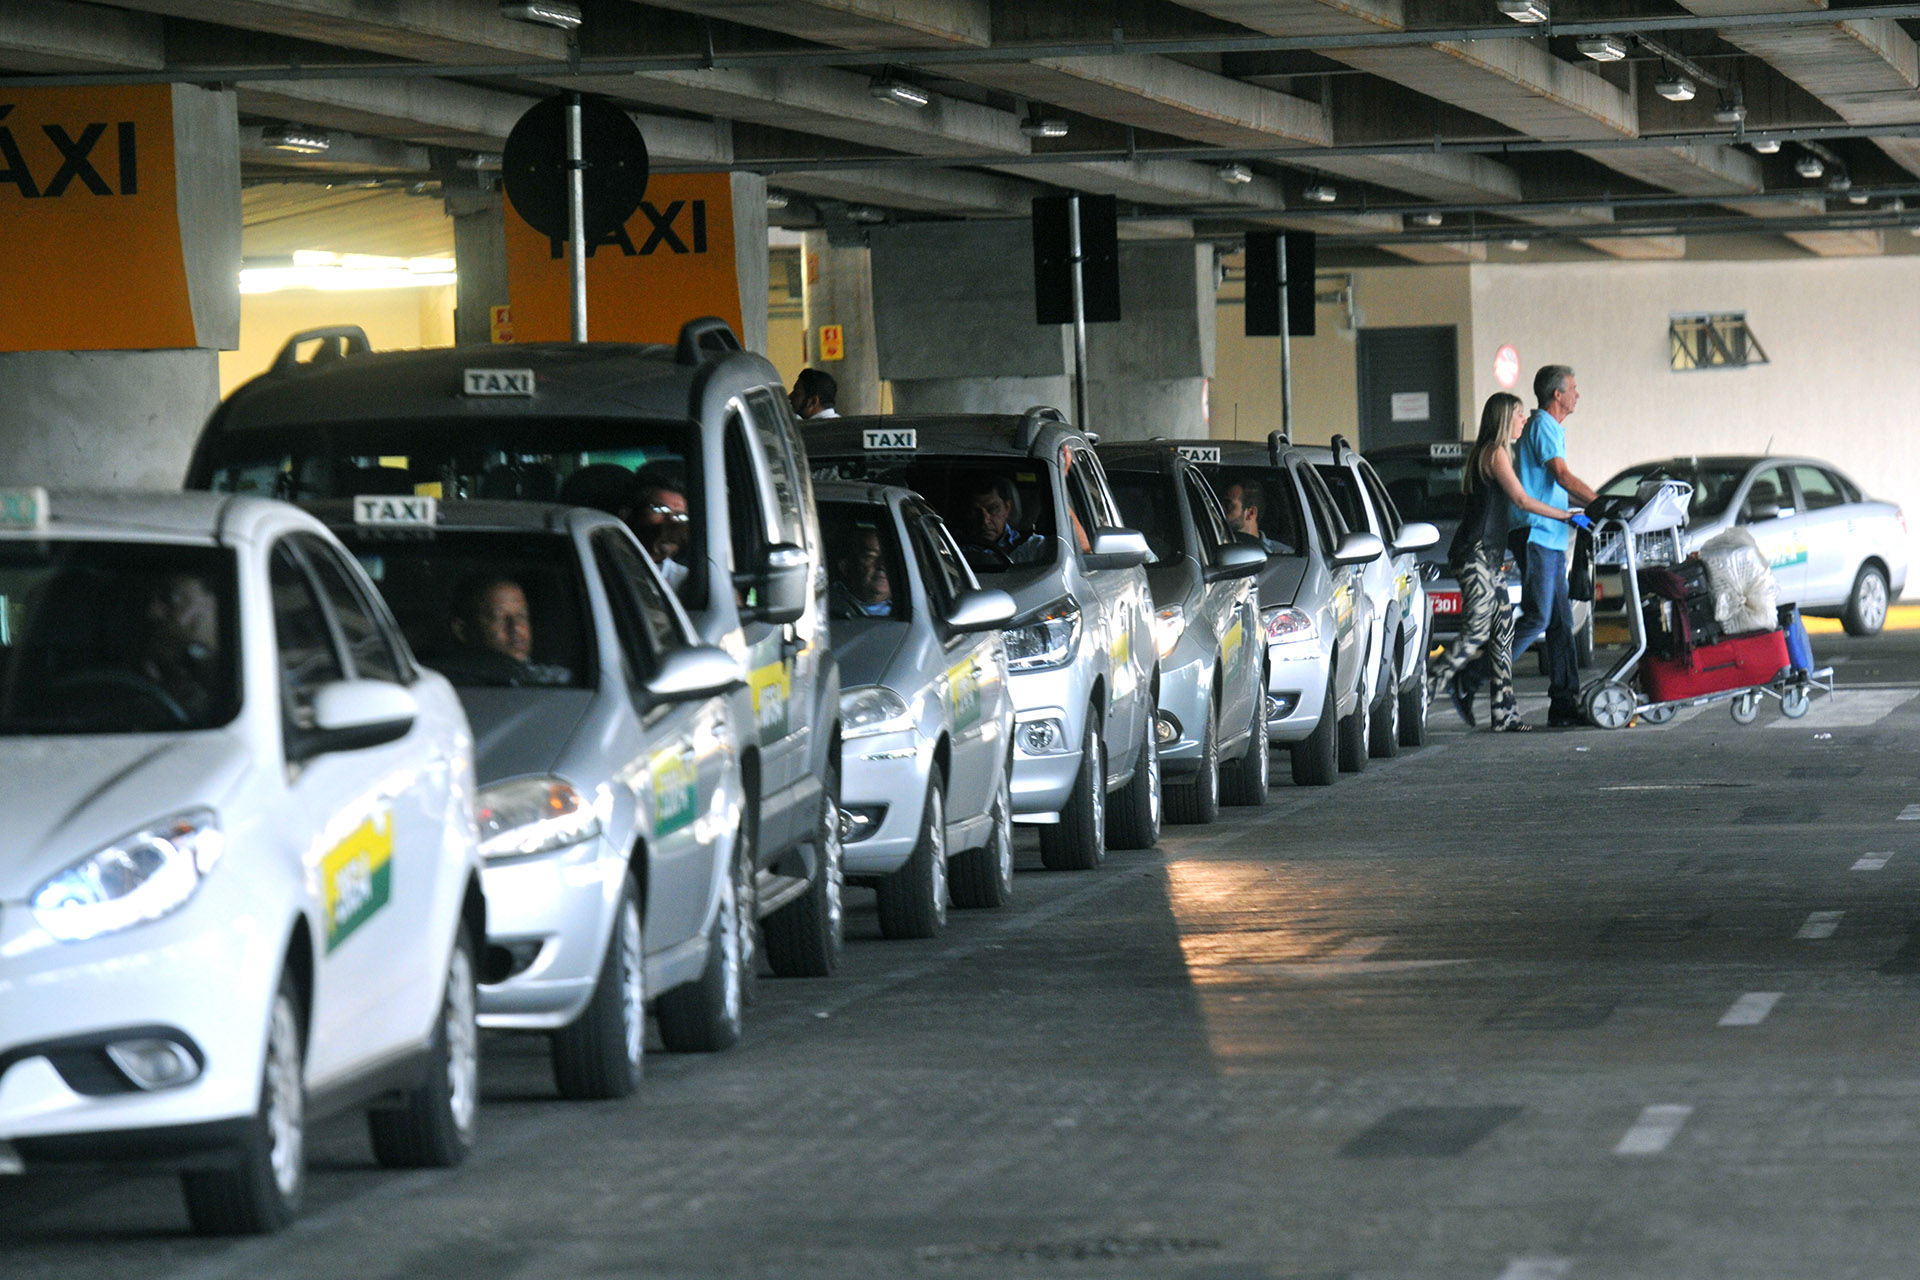 Comum em aeroportos, o táxi pré-pago está regulamentado no Distrito Federal.